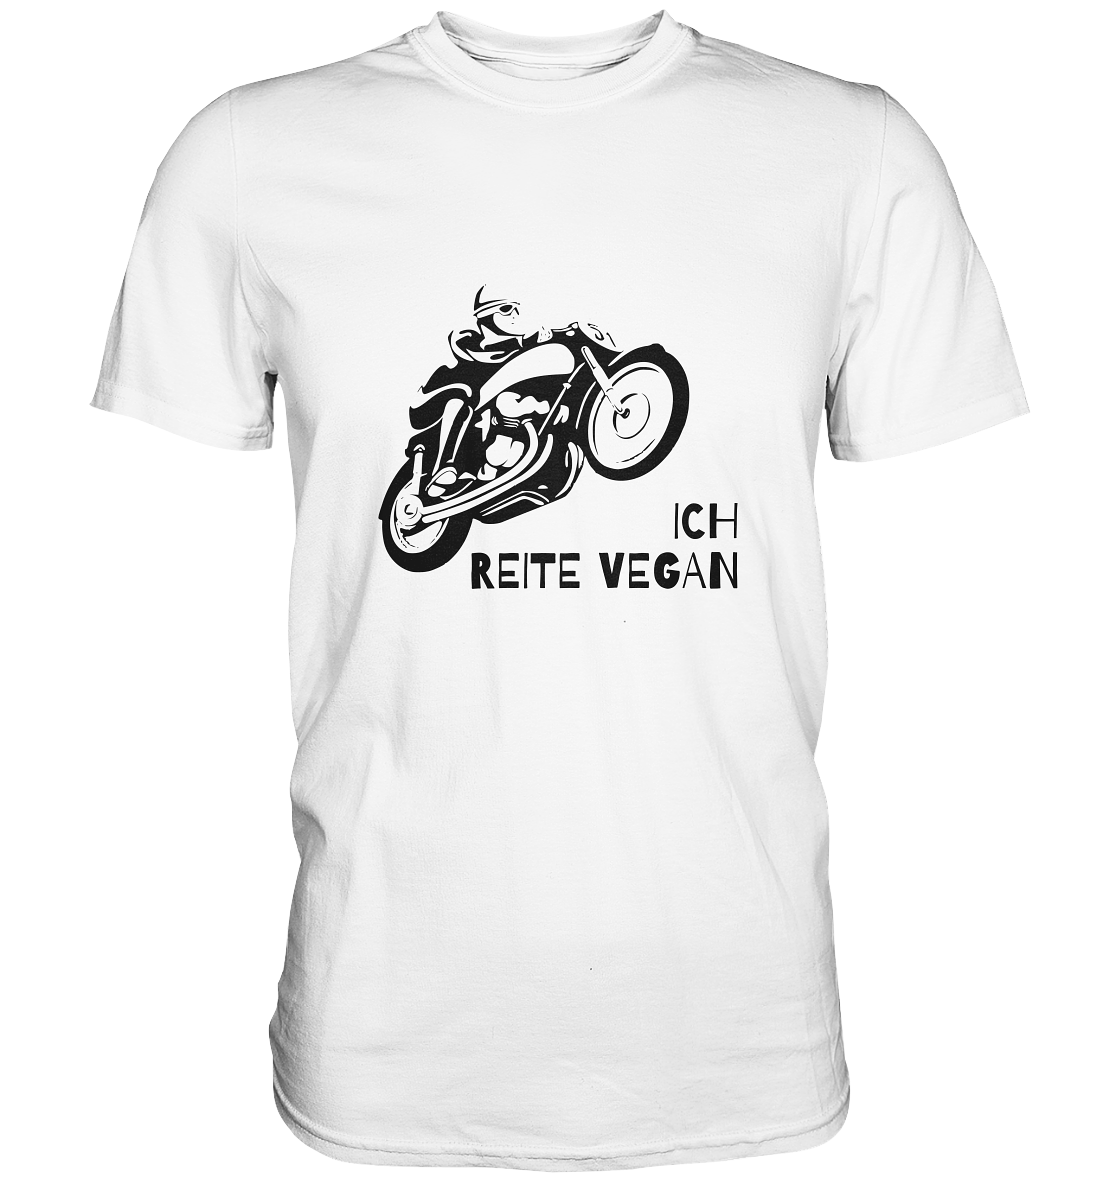 T-Shirt, Herren, Rundhals, mit Aufdruck Motorrad und Spruch "Ich reite vegan", weiß